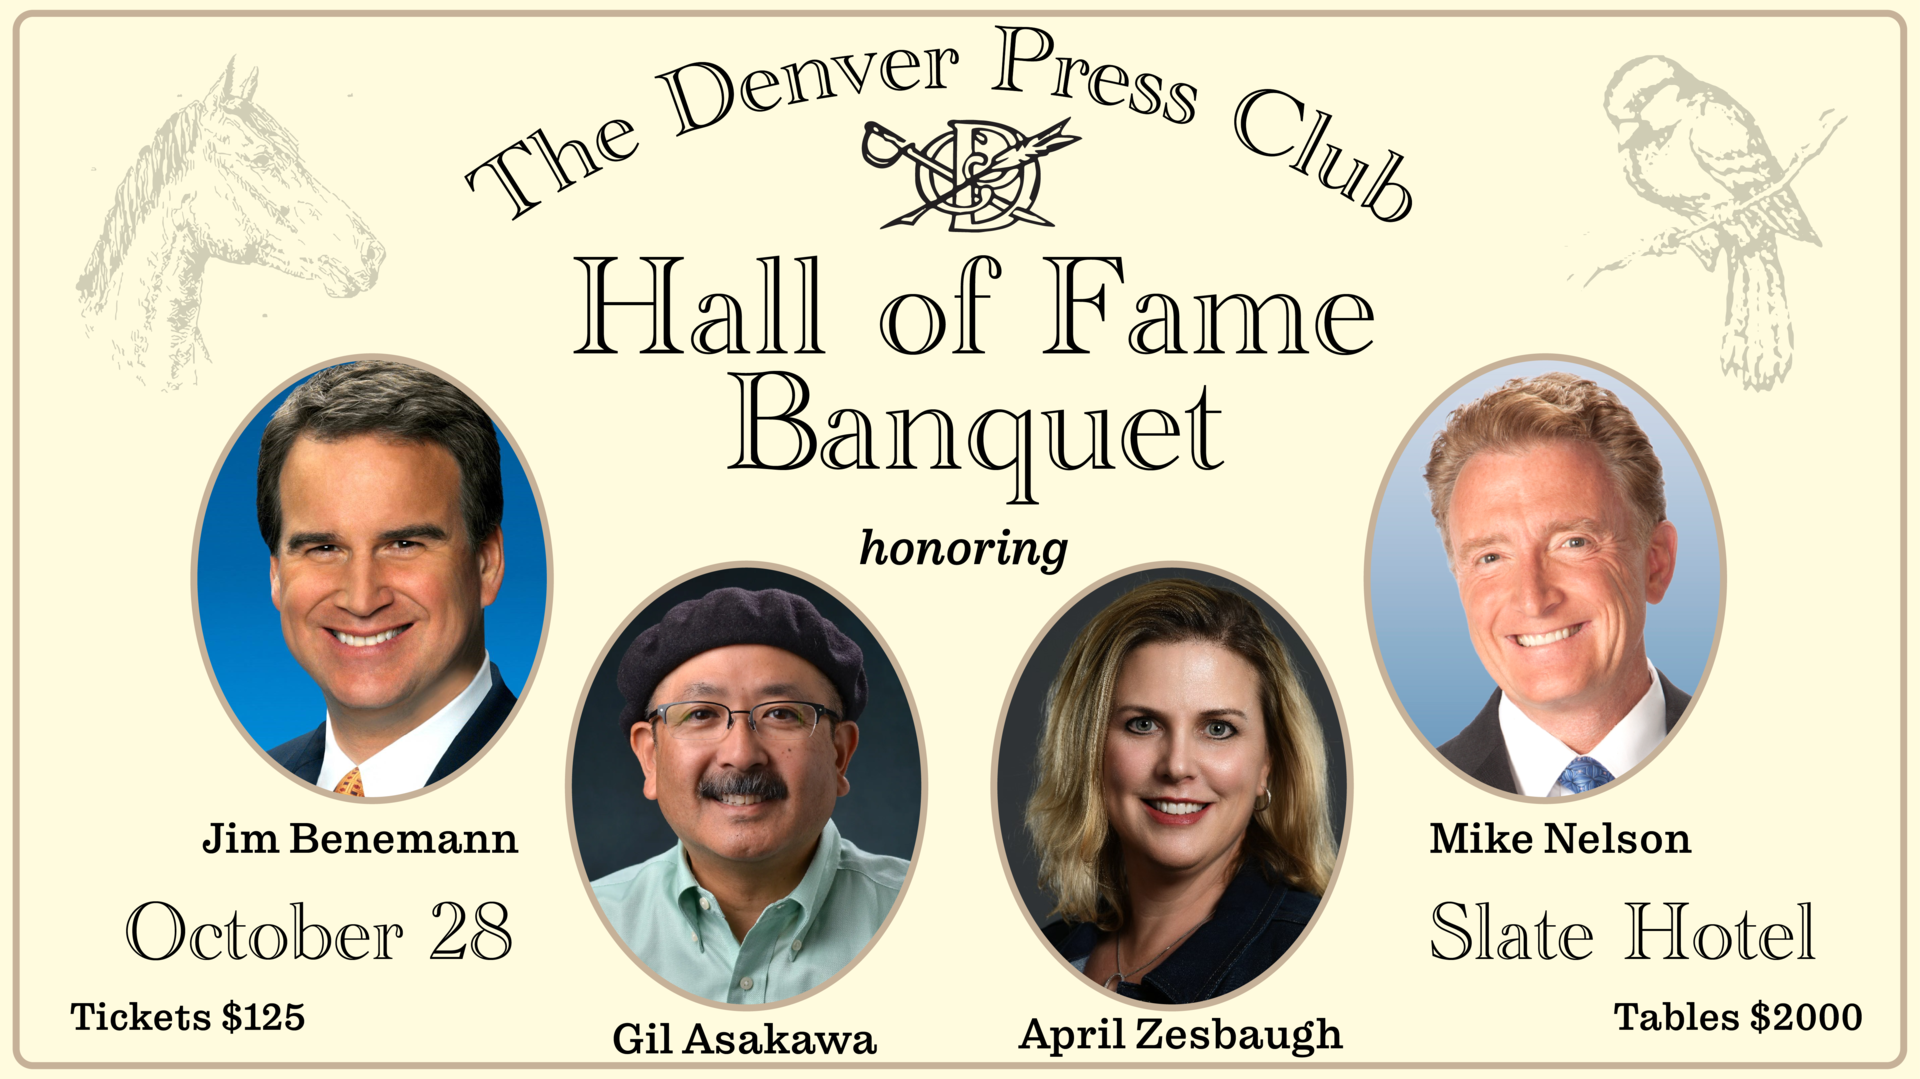  The Denver Press Club Hall of Fame